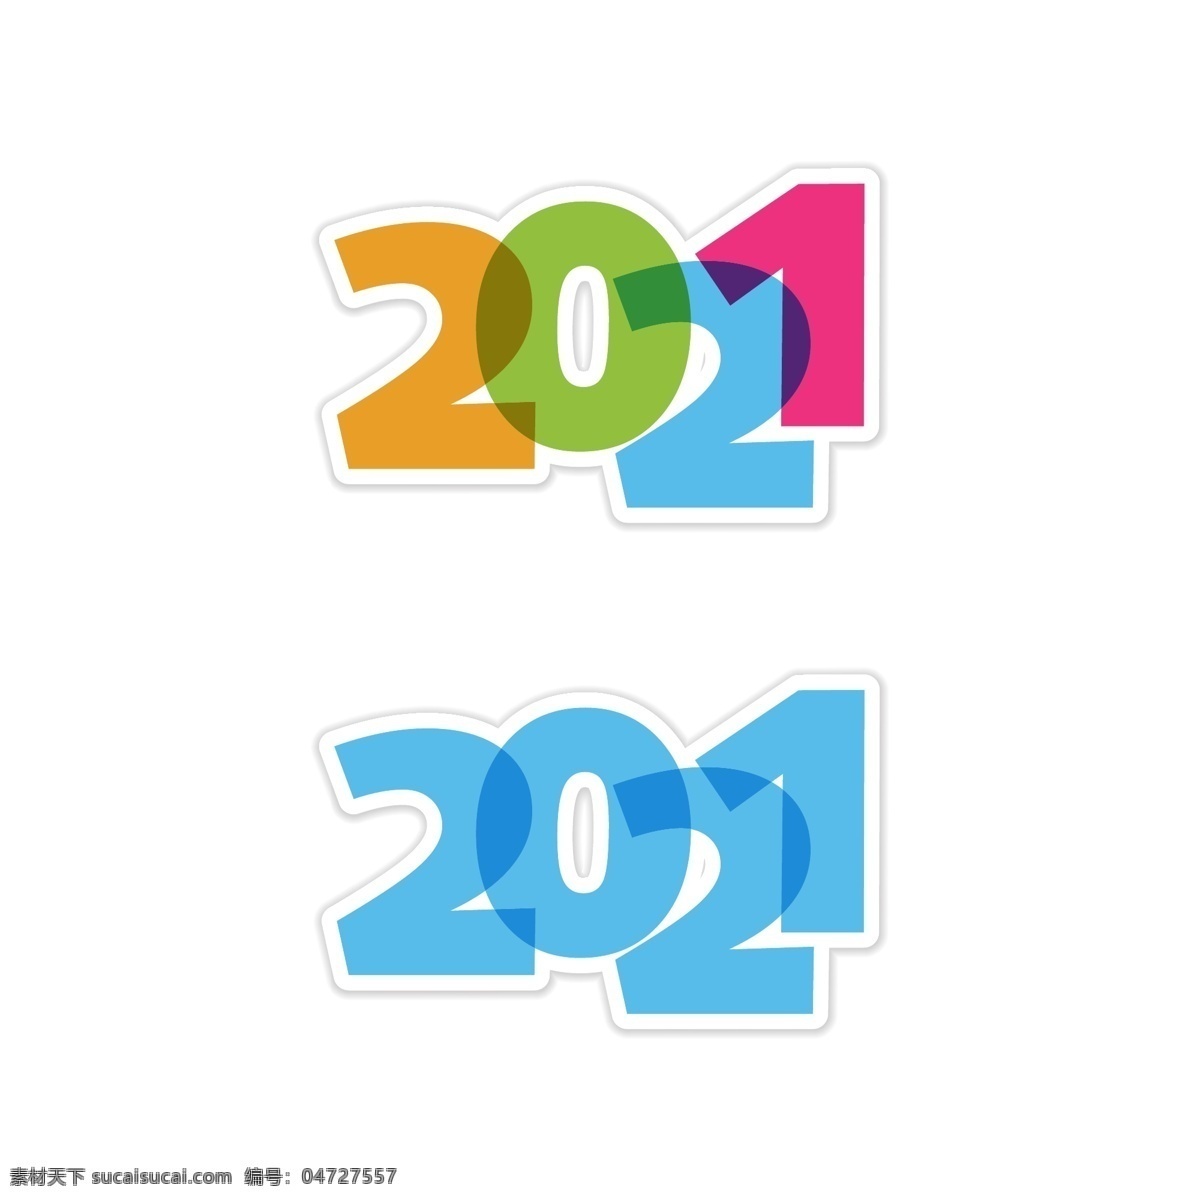 2021 字体 2021字体 2021年 创意字体 彩色 变形 数字 新年